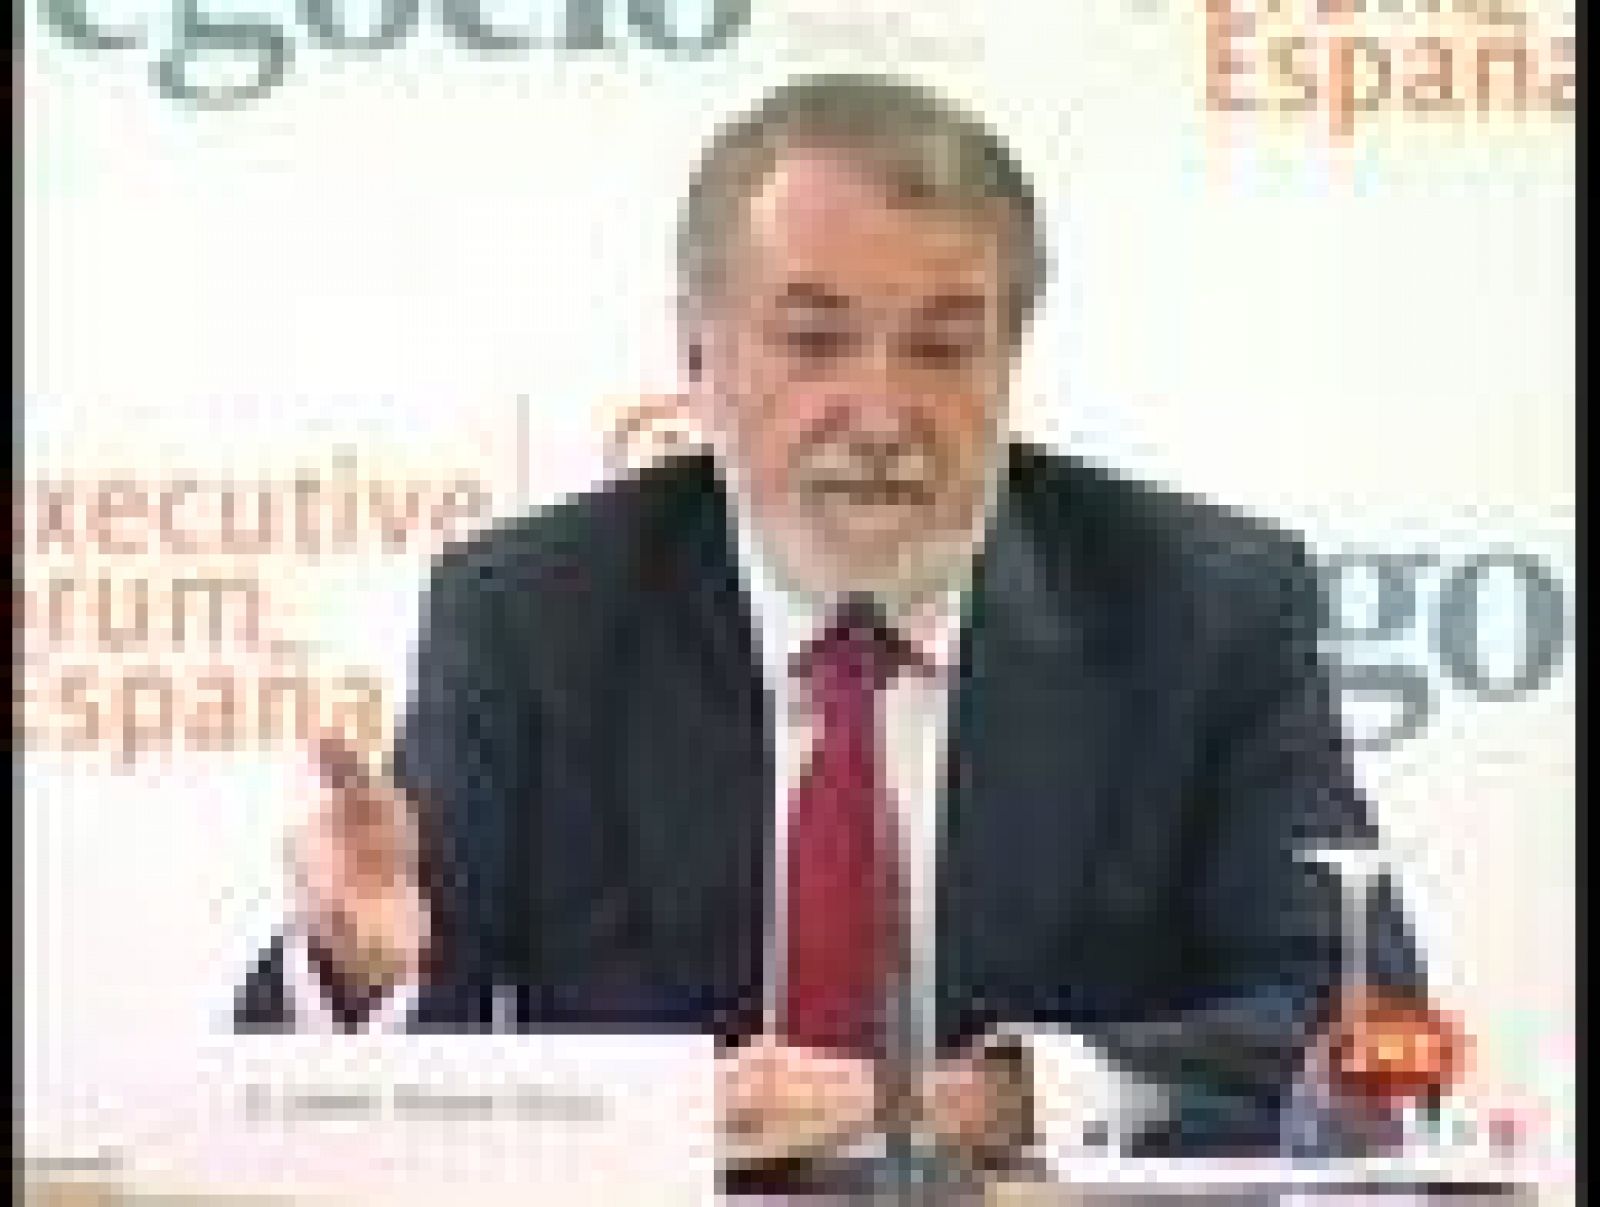 El ministro de Fomento, José Blanco, ha pedido al eurodiputado del PP Jaime Mayor Oreja que deje de "intoxicar" después de que el segundo haya acusado al Gobierno de negociar de nuevo con ETA (23/03/10).